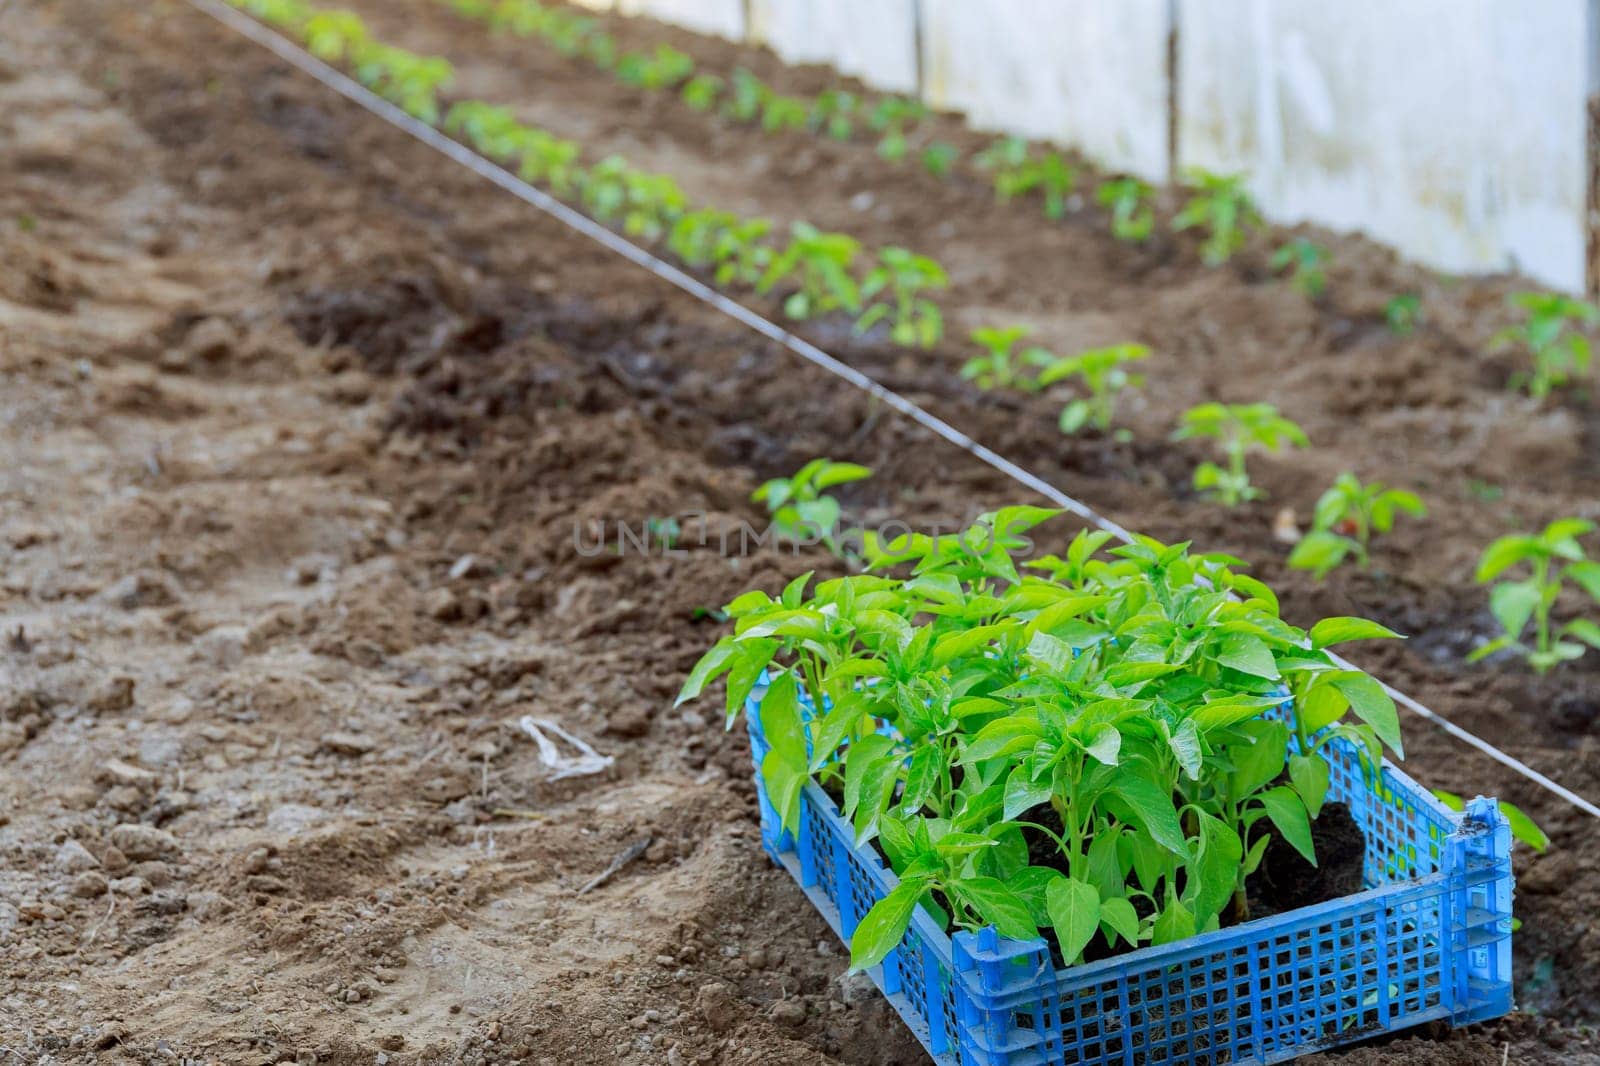 Planting pepper seedlings requires careful preparation of soil. by Yaroslav